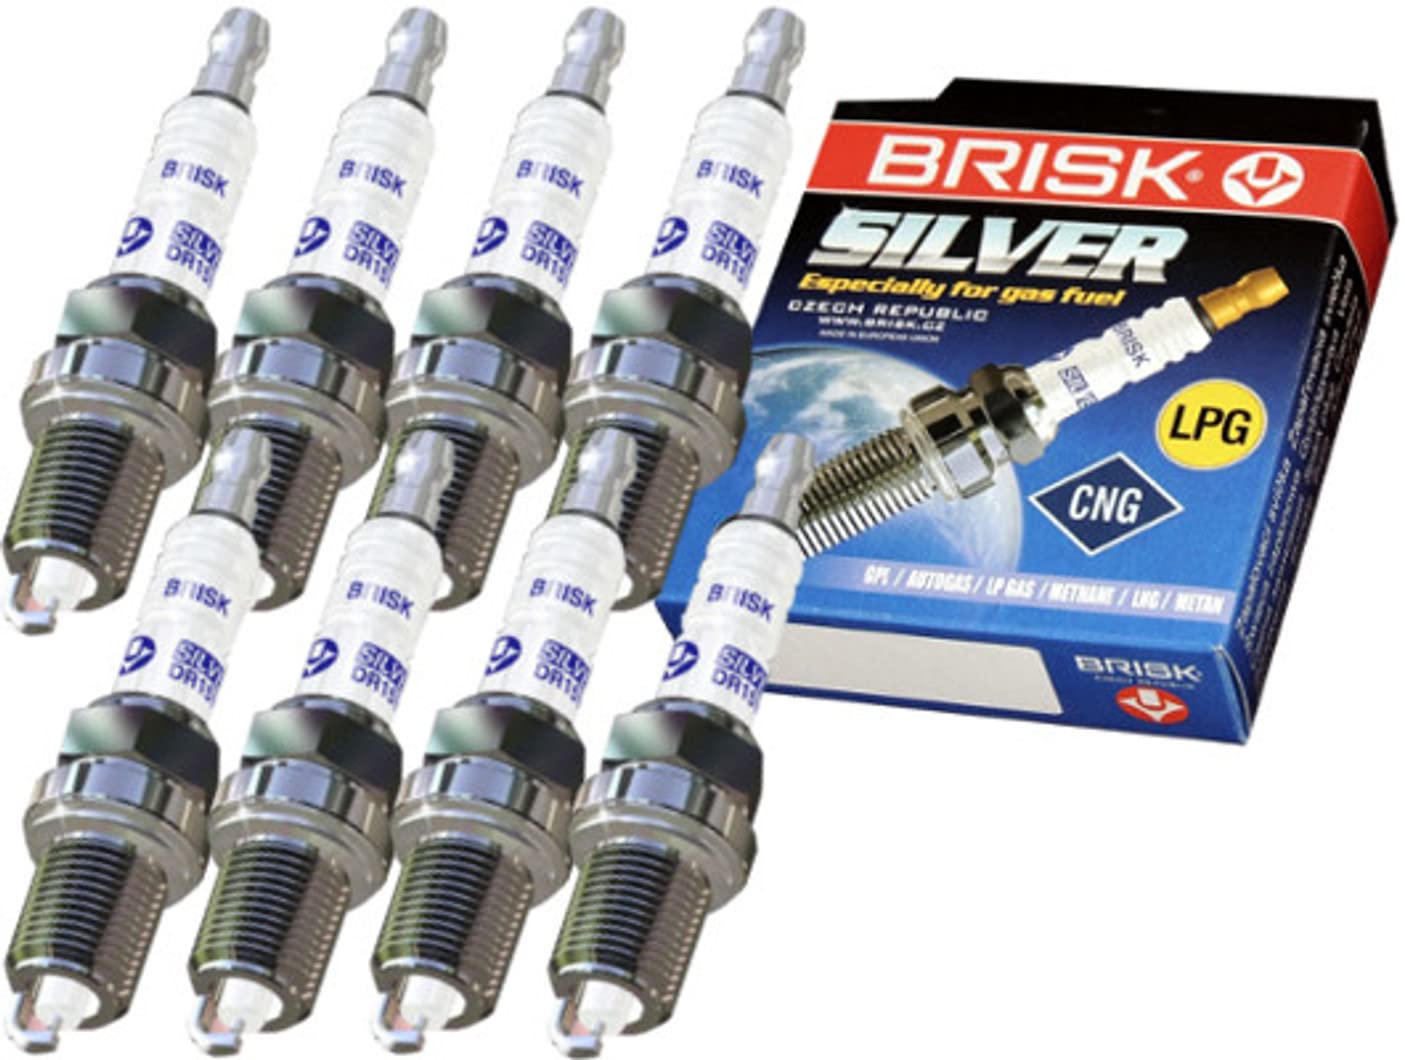 BRISK Silver DR15YS 1334 Zündkerzen Benzin LPG GPL CNG Autogas, 8 Stück von BRISK